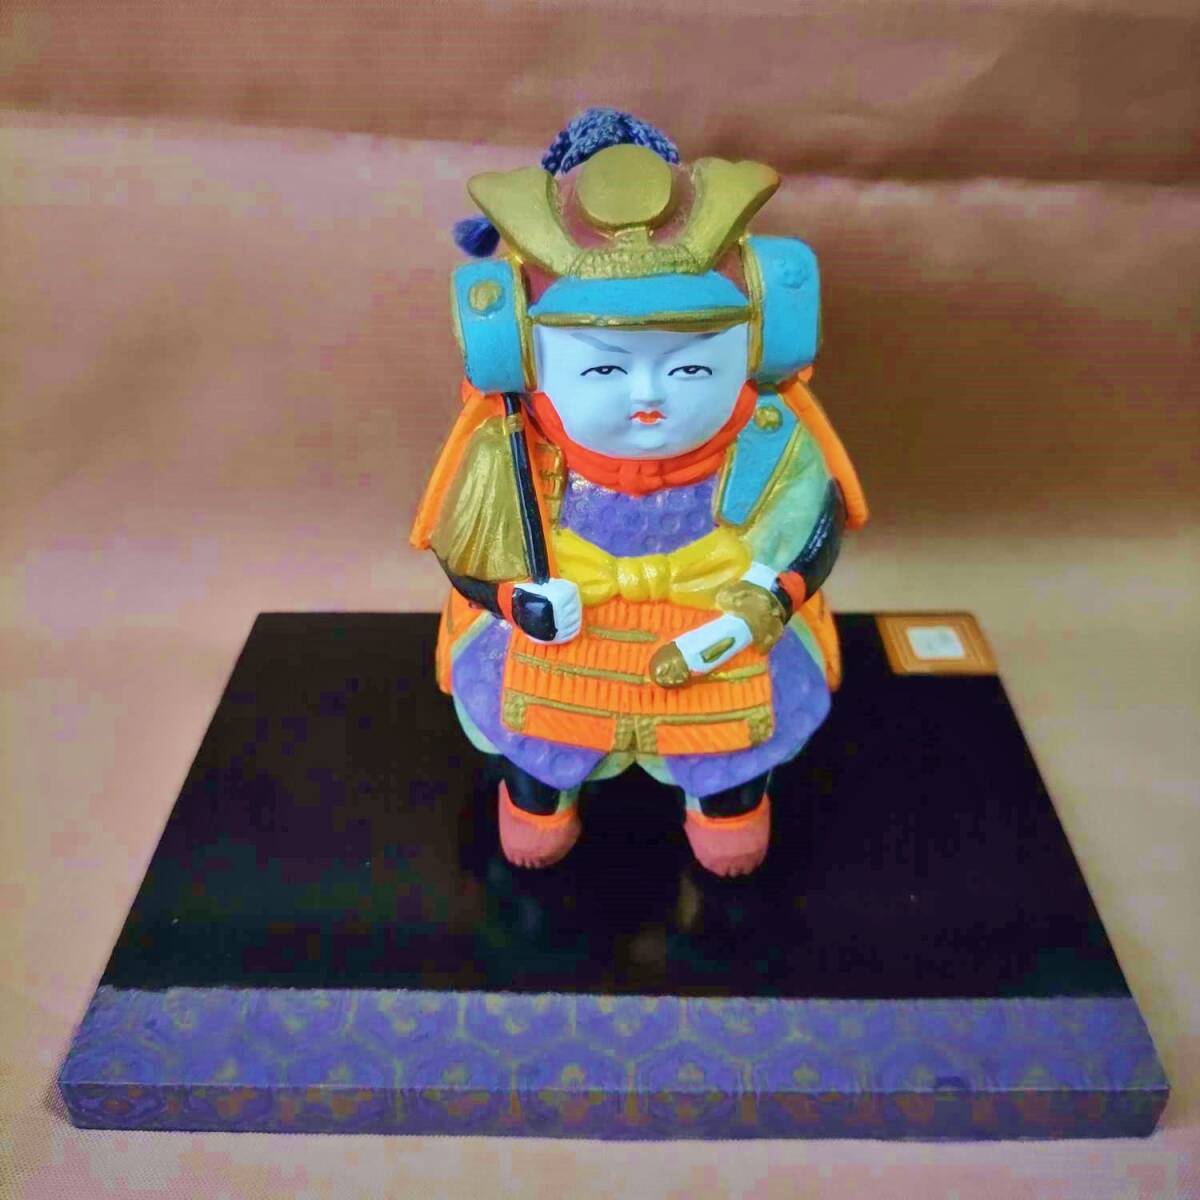 Fabriqué par Gokatsu Gokatsu Doll Samurai Earthen Bell/Samurai Armure Casque Boy's Festival Samurai Bell Fabriqué par Gokatsu Crafts Journée des enfants, saison, Évènement annuel, la journée des enfants, Poupée de mai